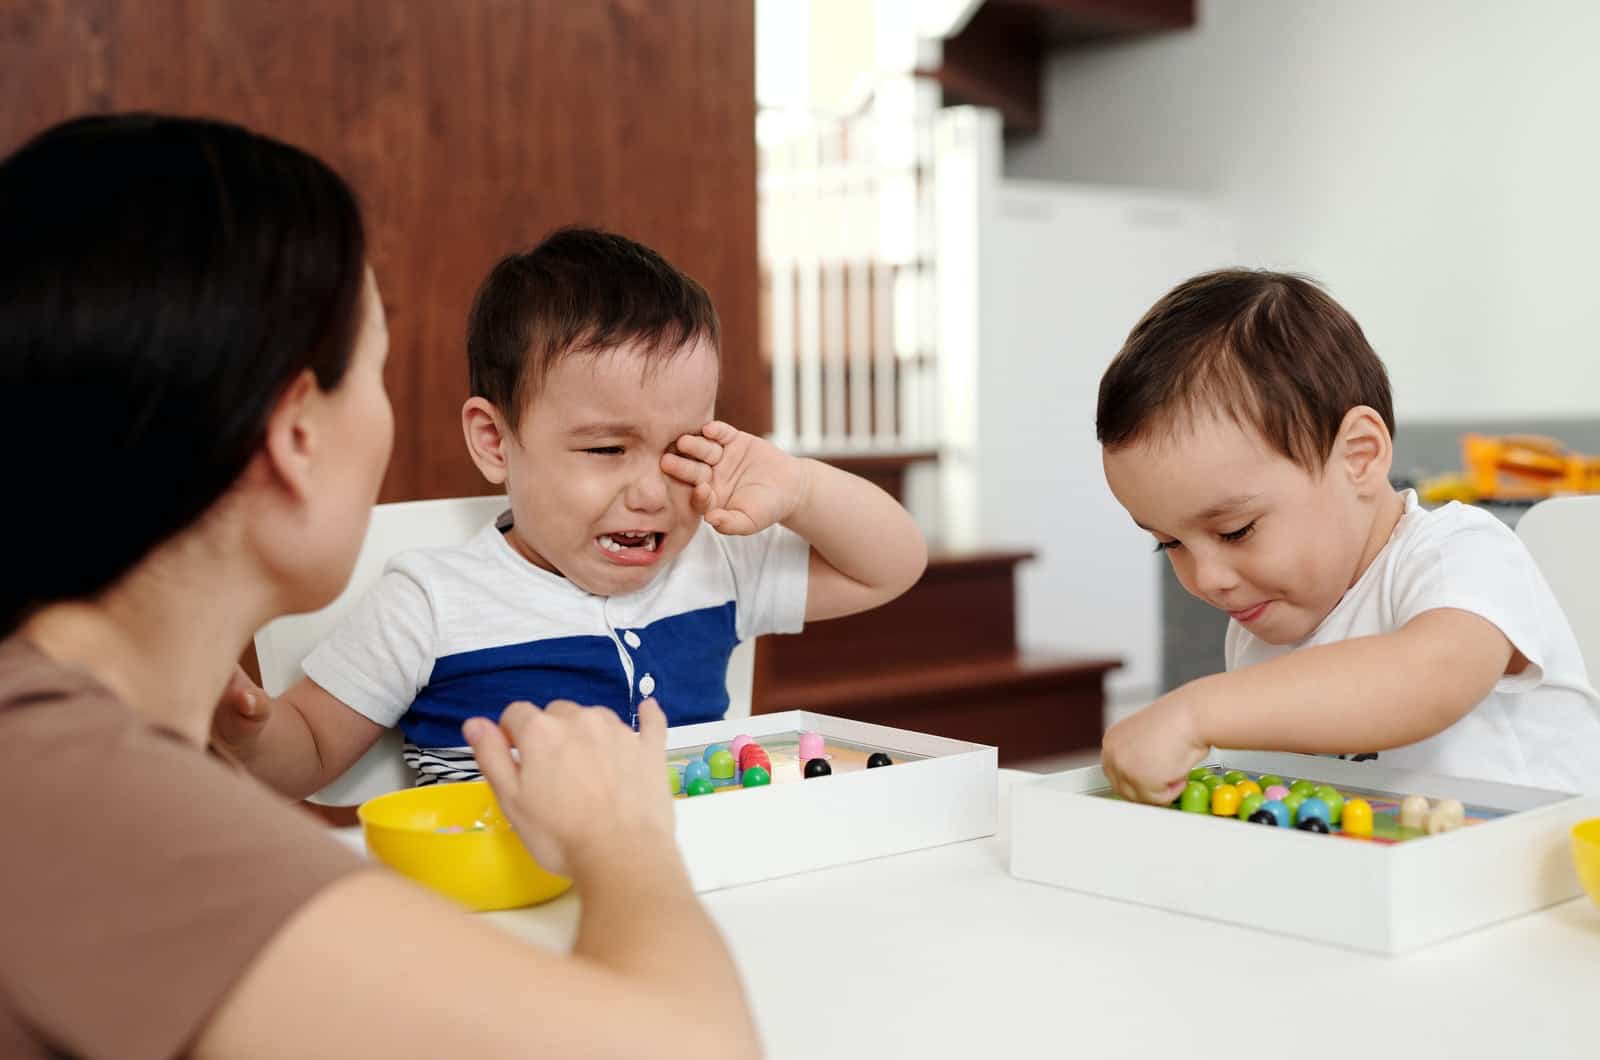 deux garçons et une mère jouant à des jeux pendant que l'un pleure